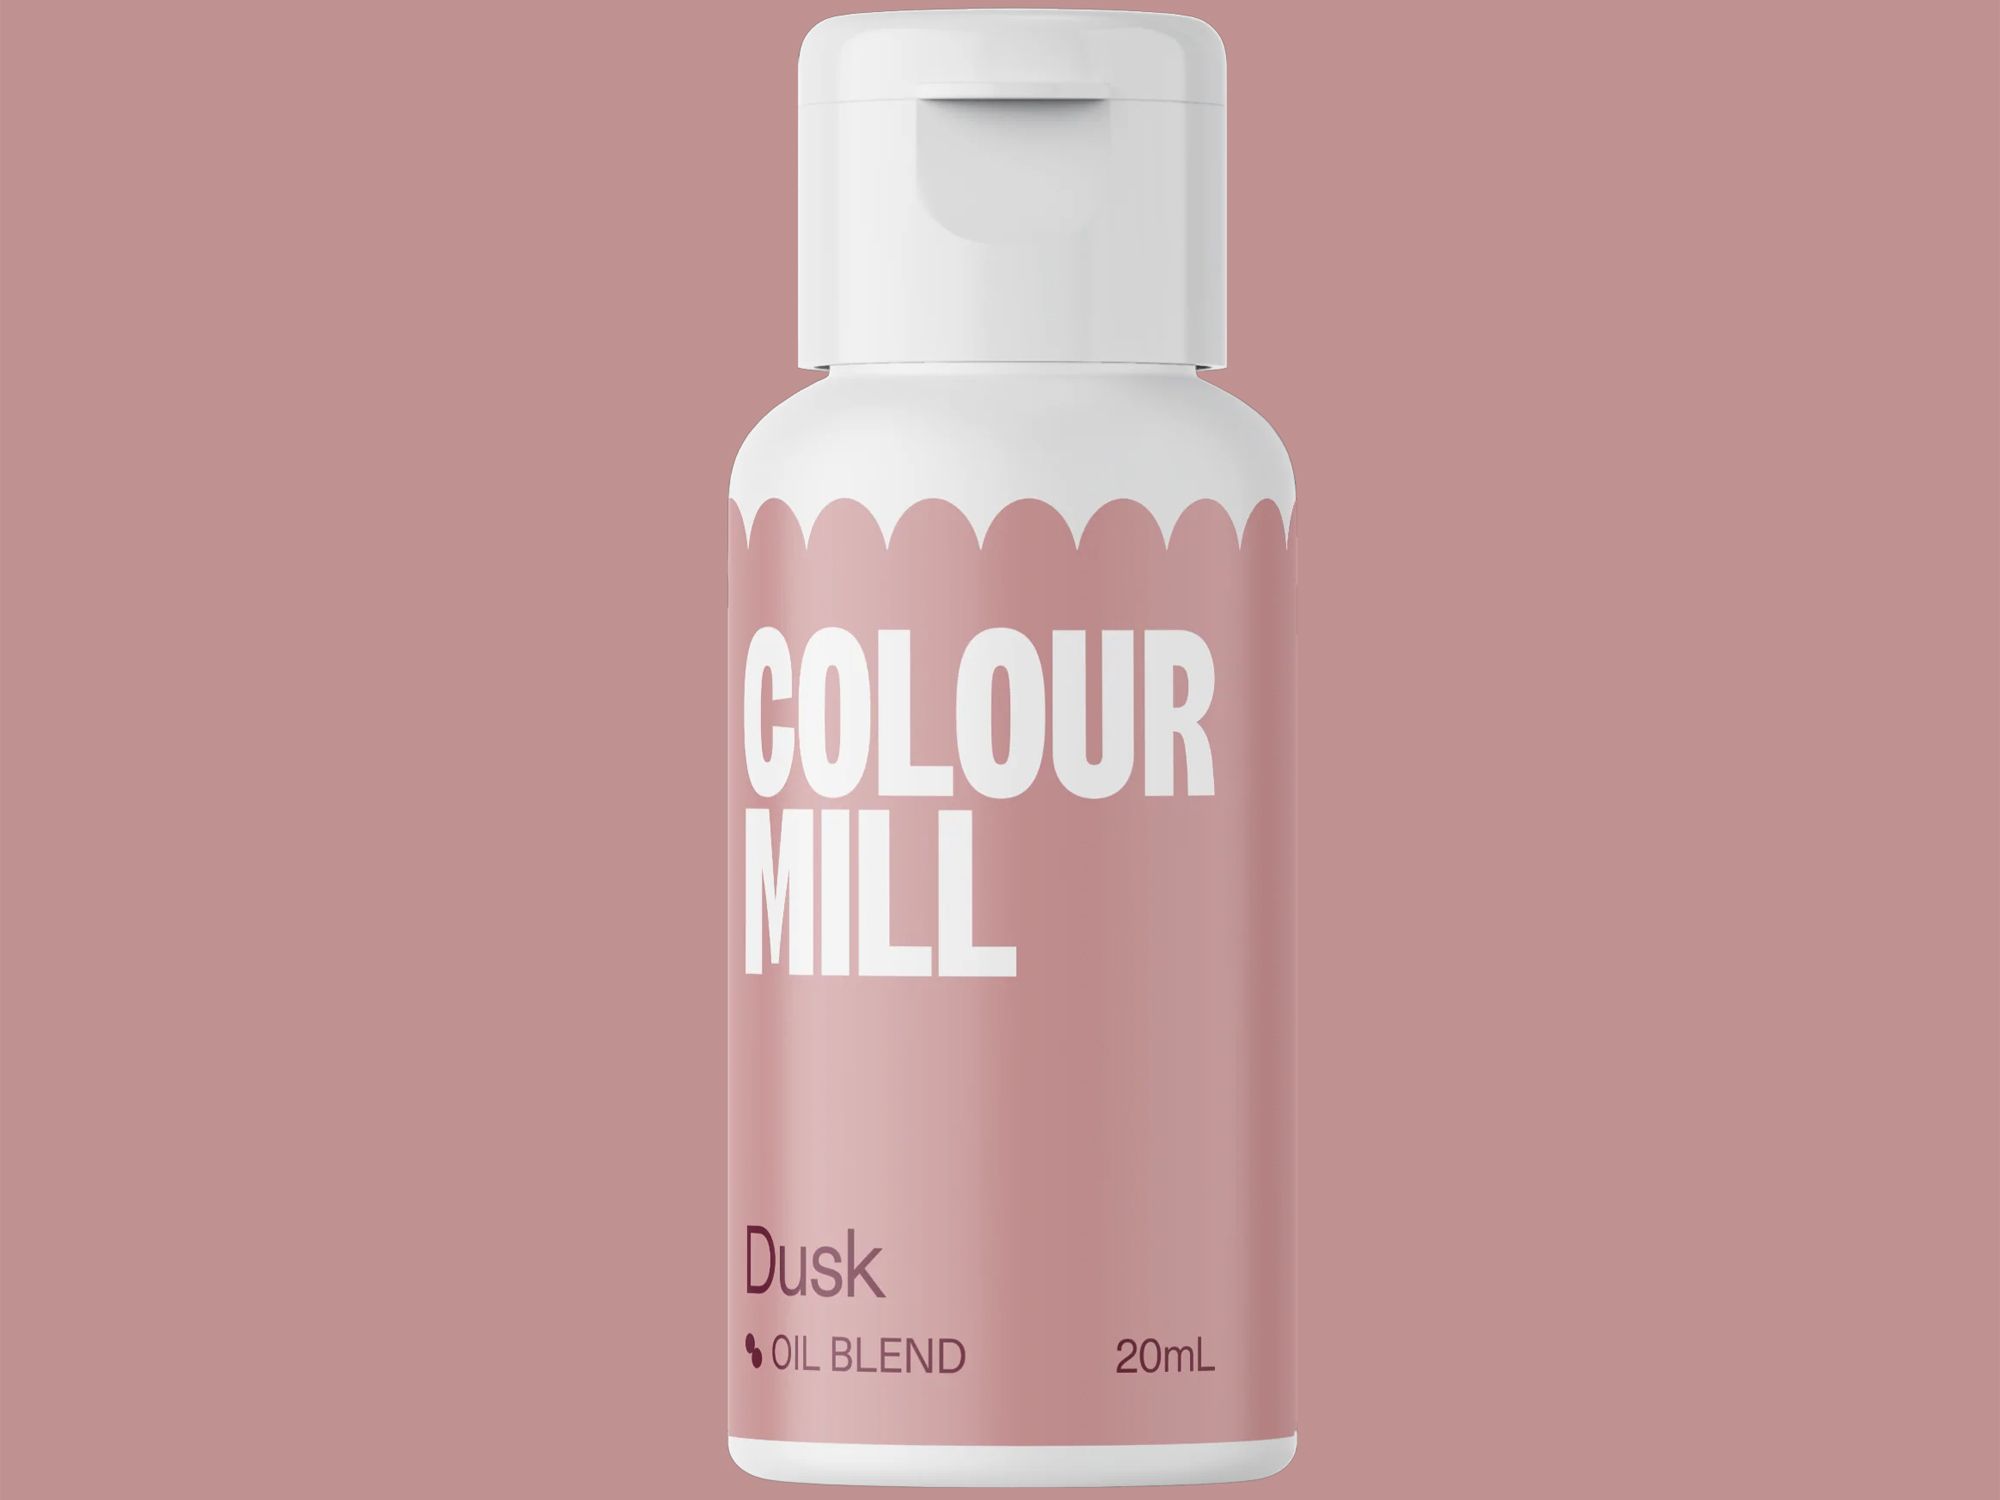 Colour Mill Dusk (Oil Blend) 20ml